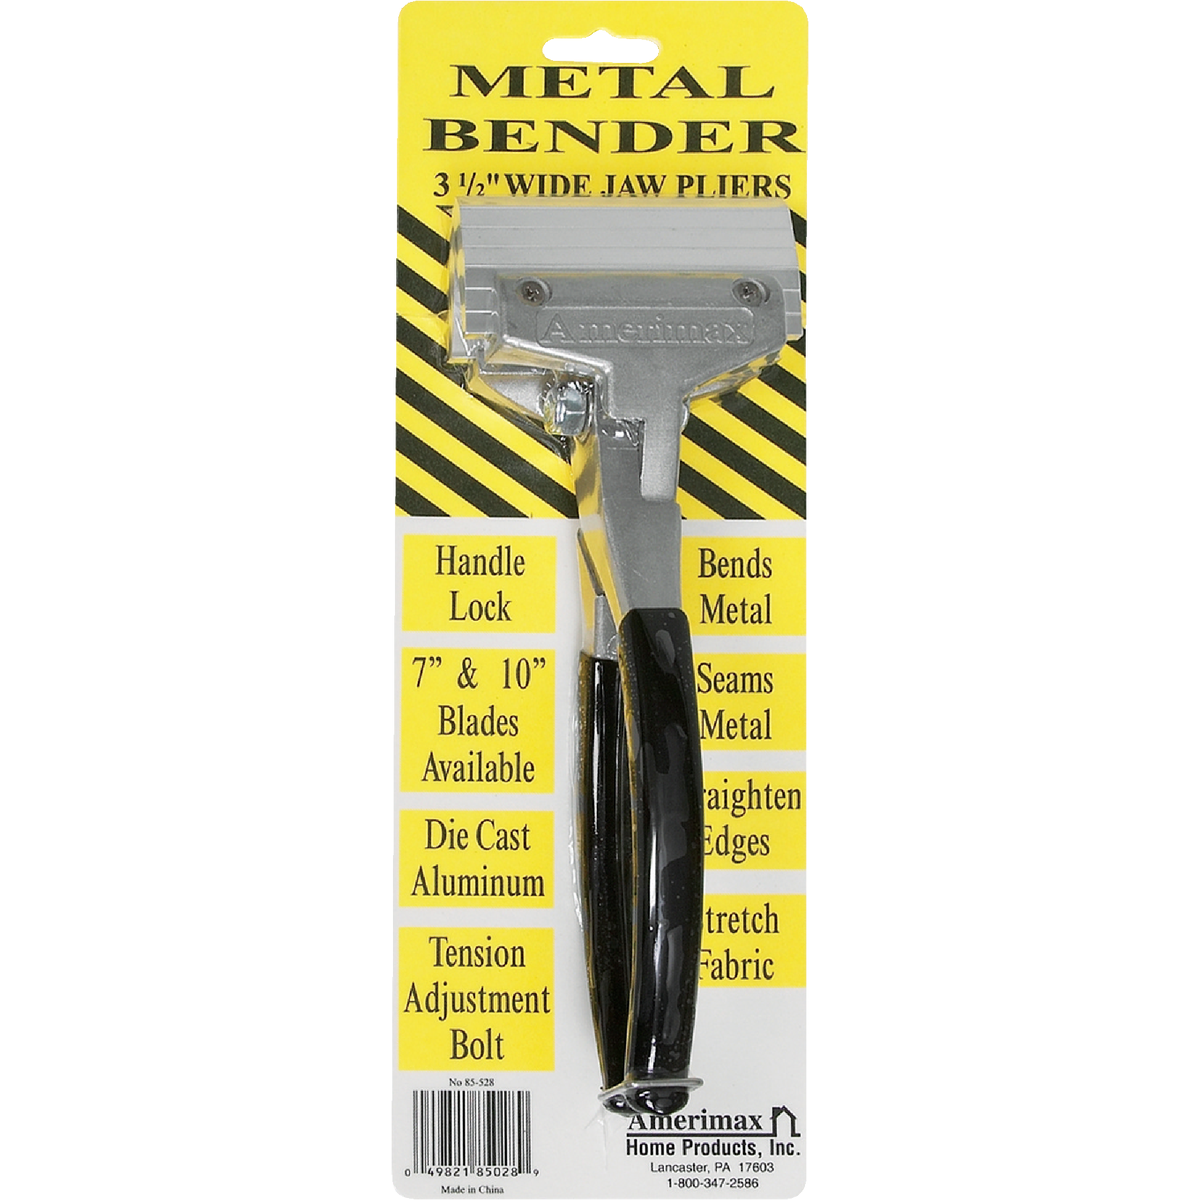 Metal Bender Pliers & Accessories